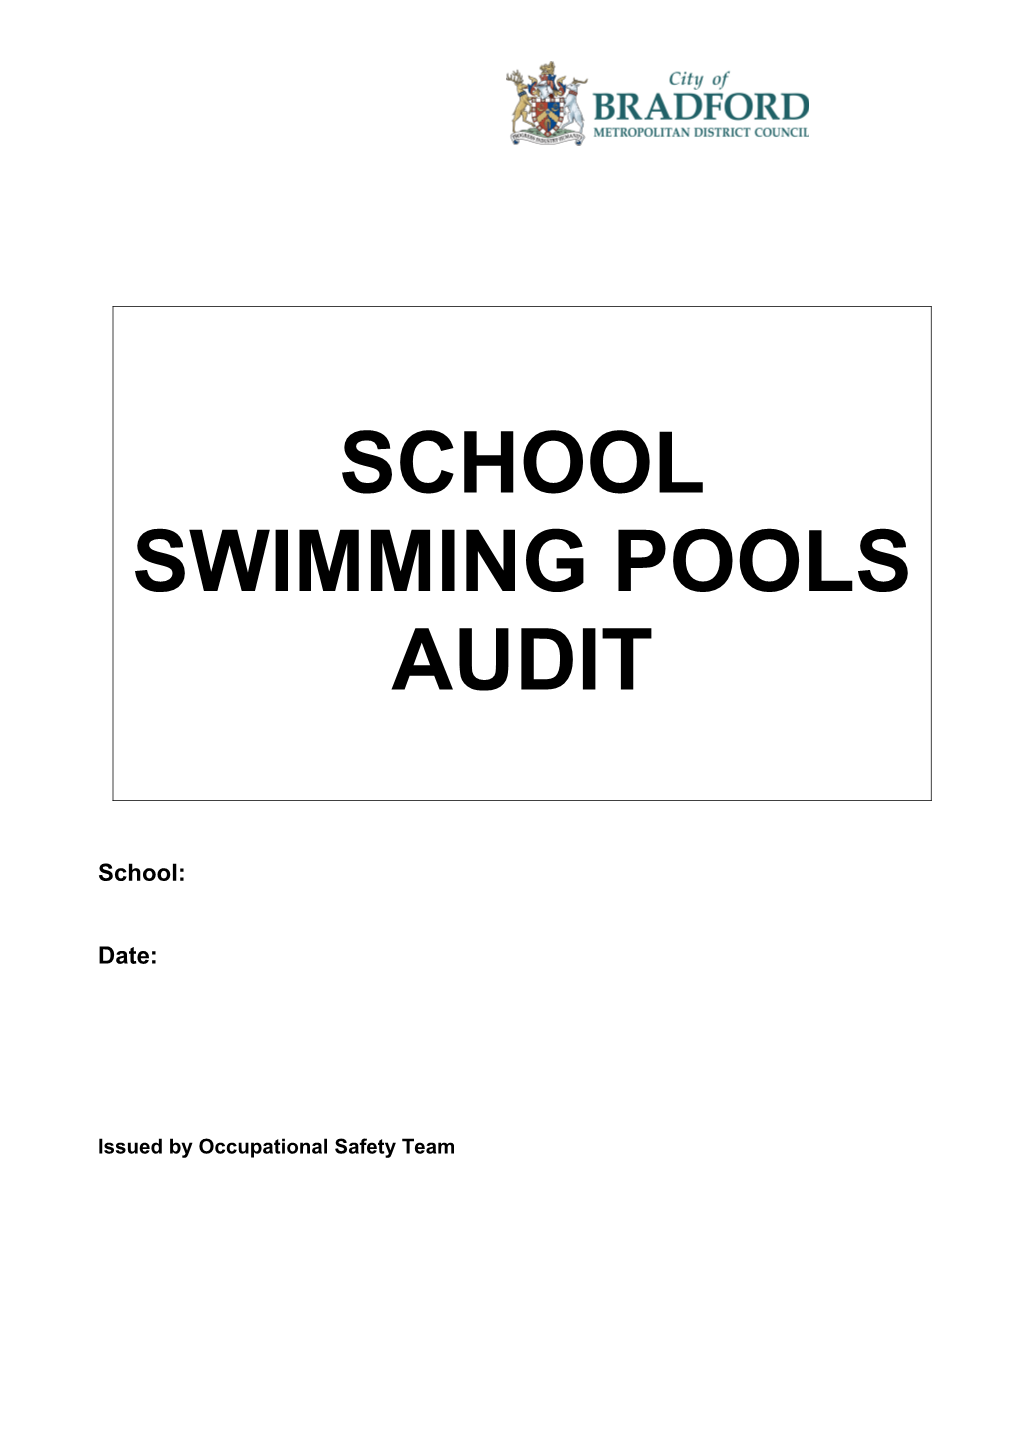 School Pool Audit